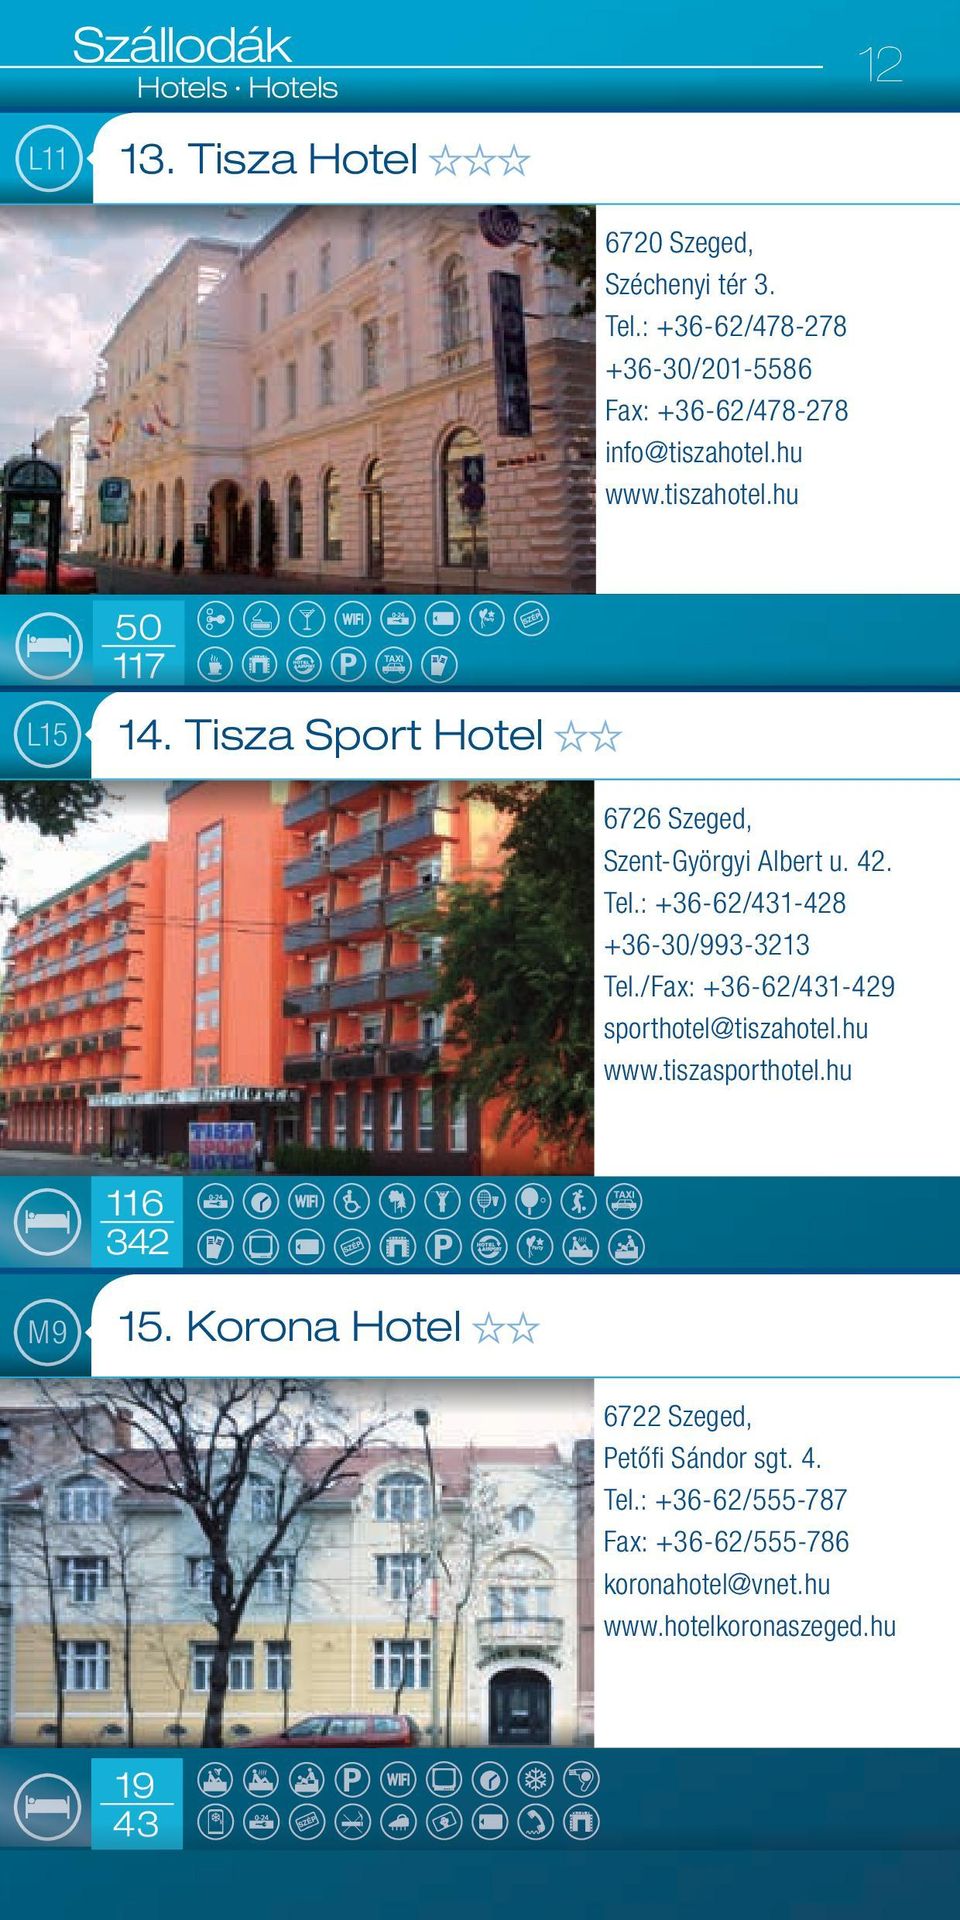 Tisza Sport Hotel 6726 Szeged, Szent-Györgyi Albert u. 42. Tel.: +36-62/431-428 +36-30/993-3213 Tel.